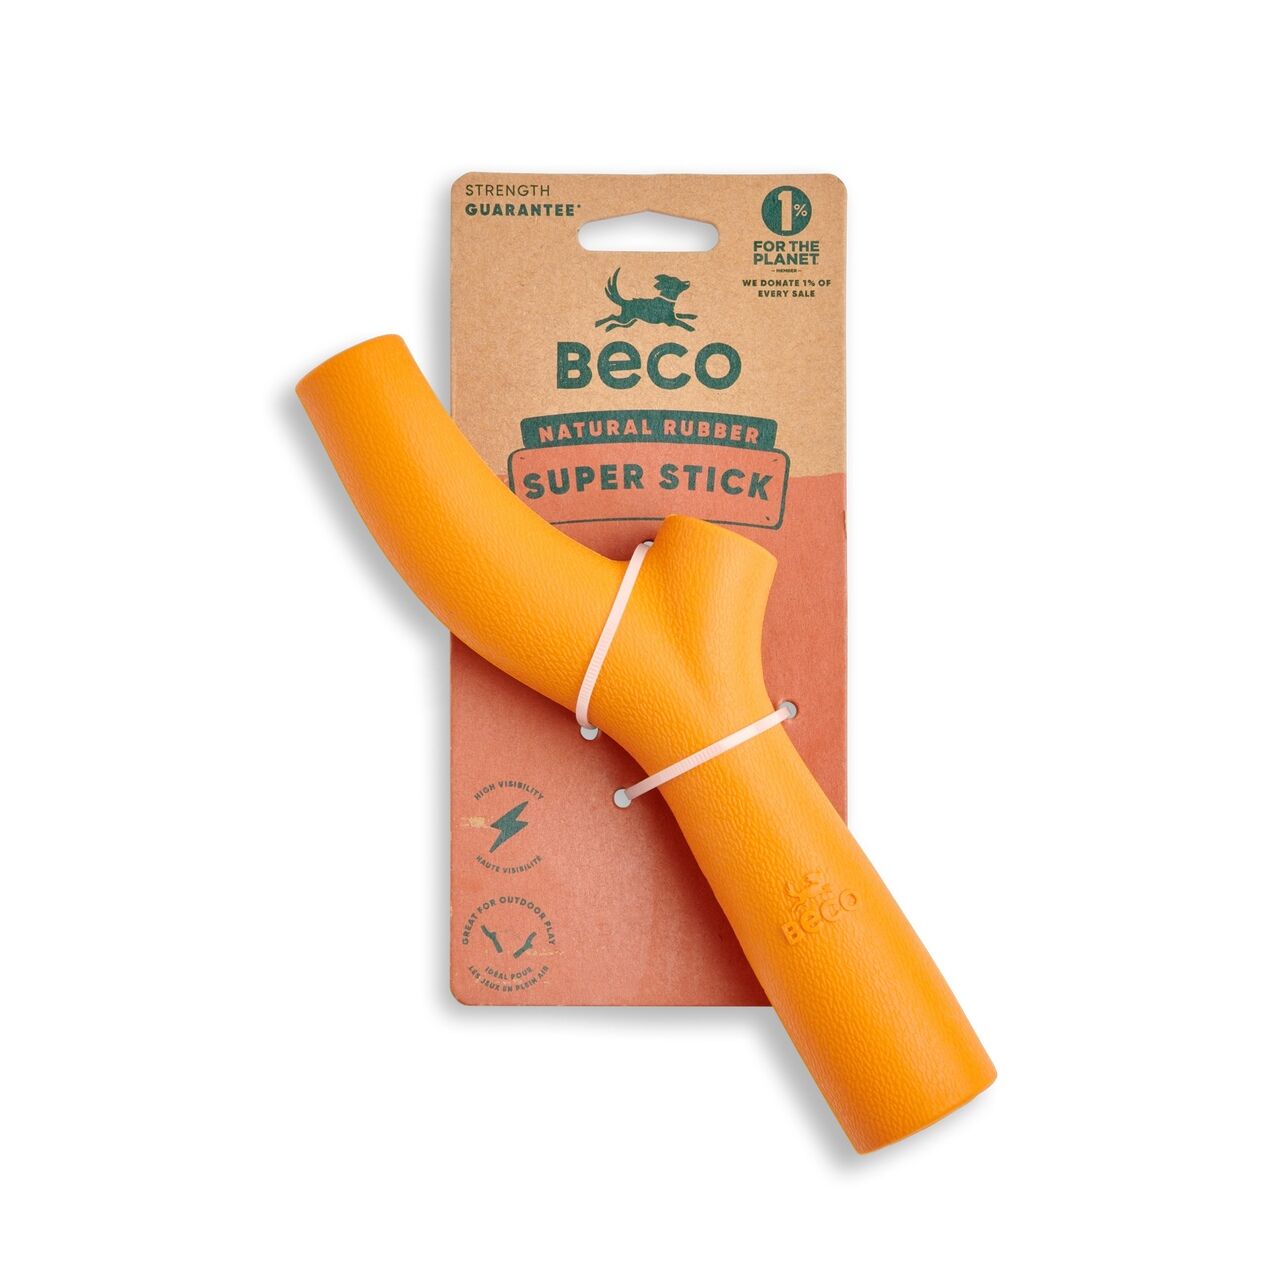 Beco-Super-Stick-mit-Verpackung-orange-aus-Naturkautschuk-Stoeckchen-werfen-ungefaehrlich-BT-75626